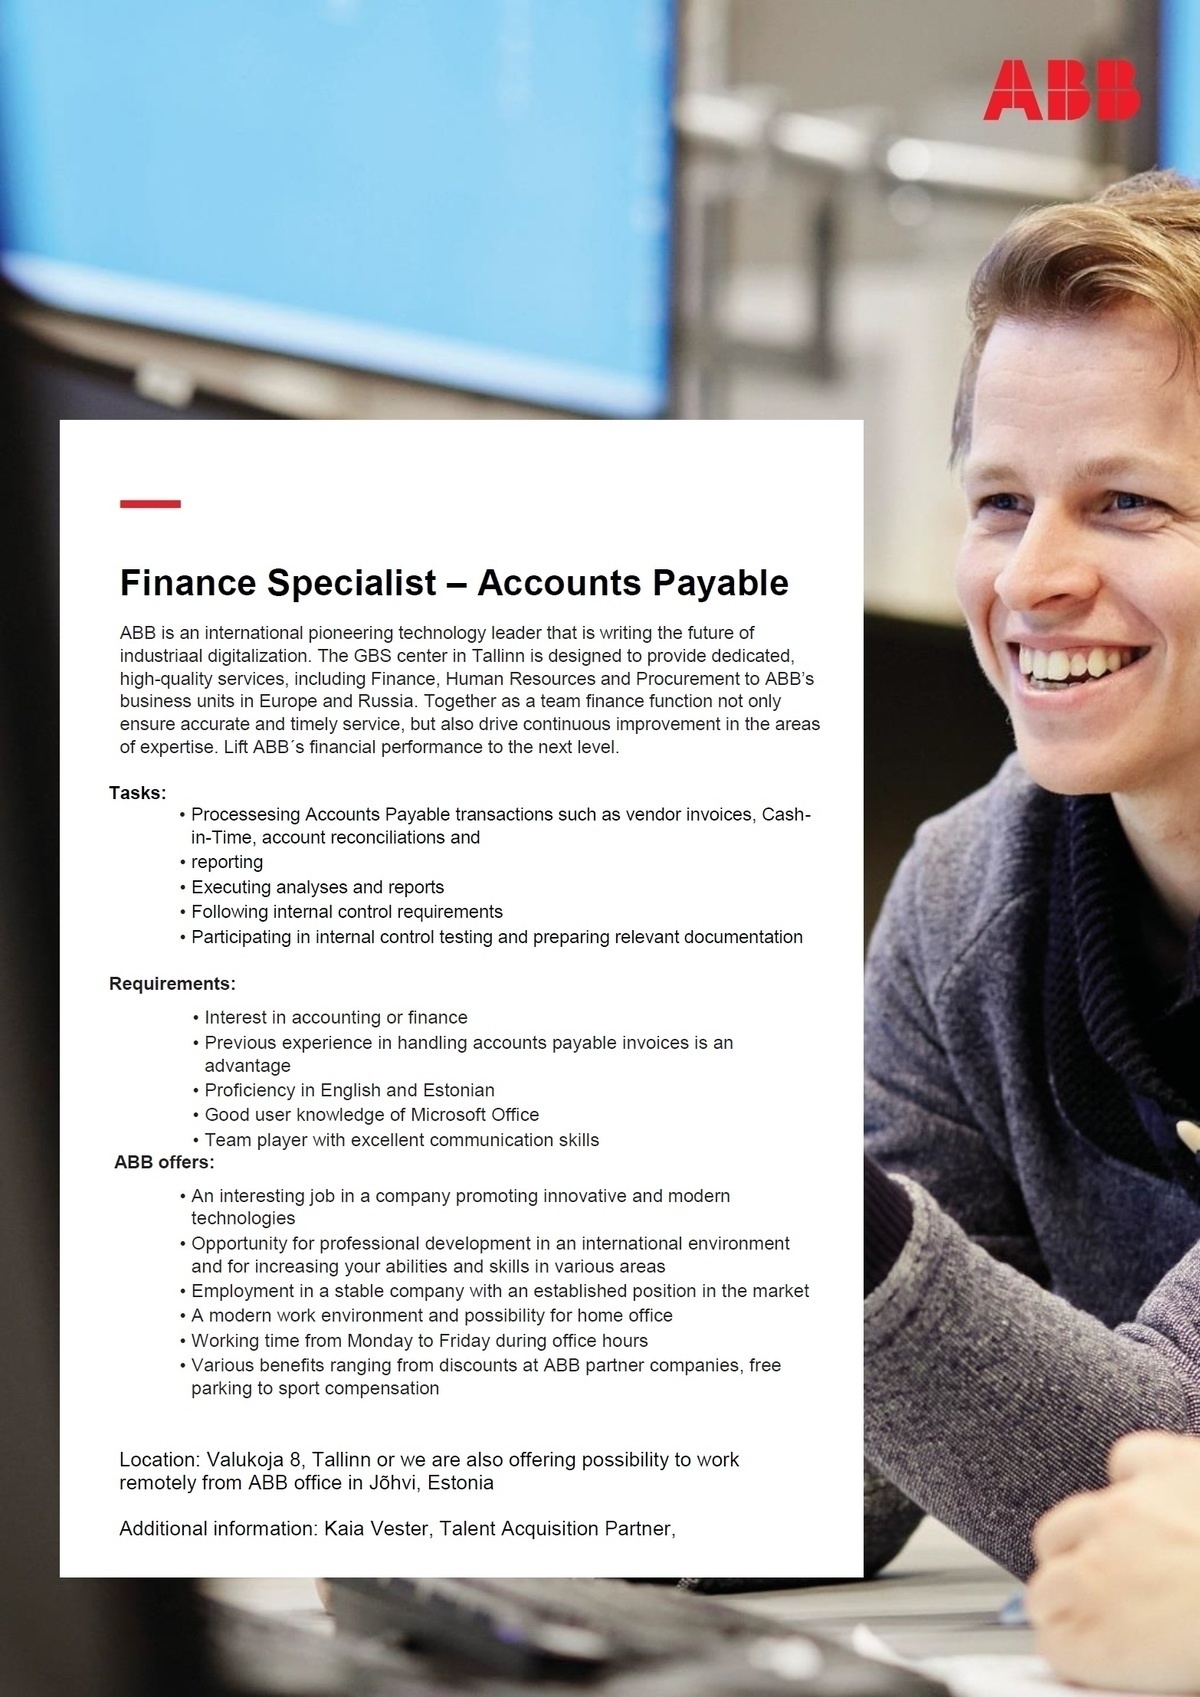 ABB AS Finance Specialist – Accounts Payable